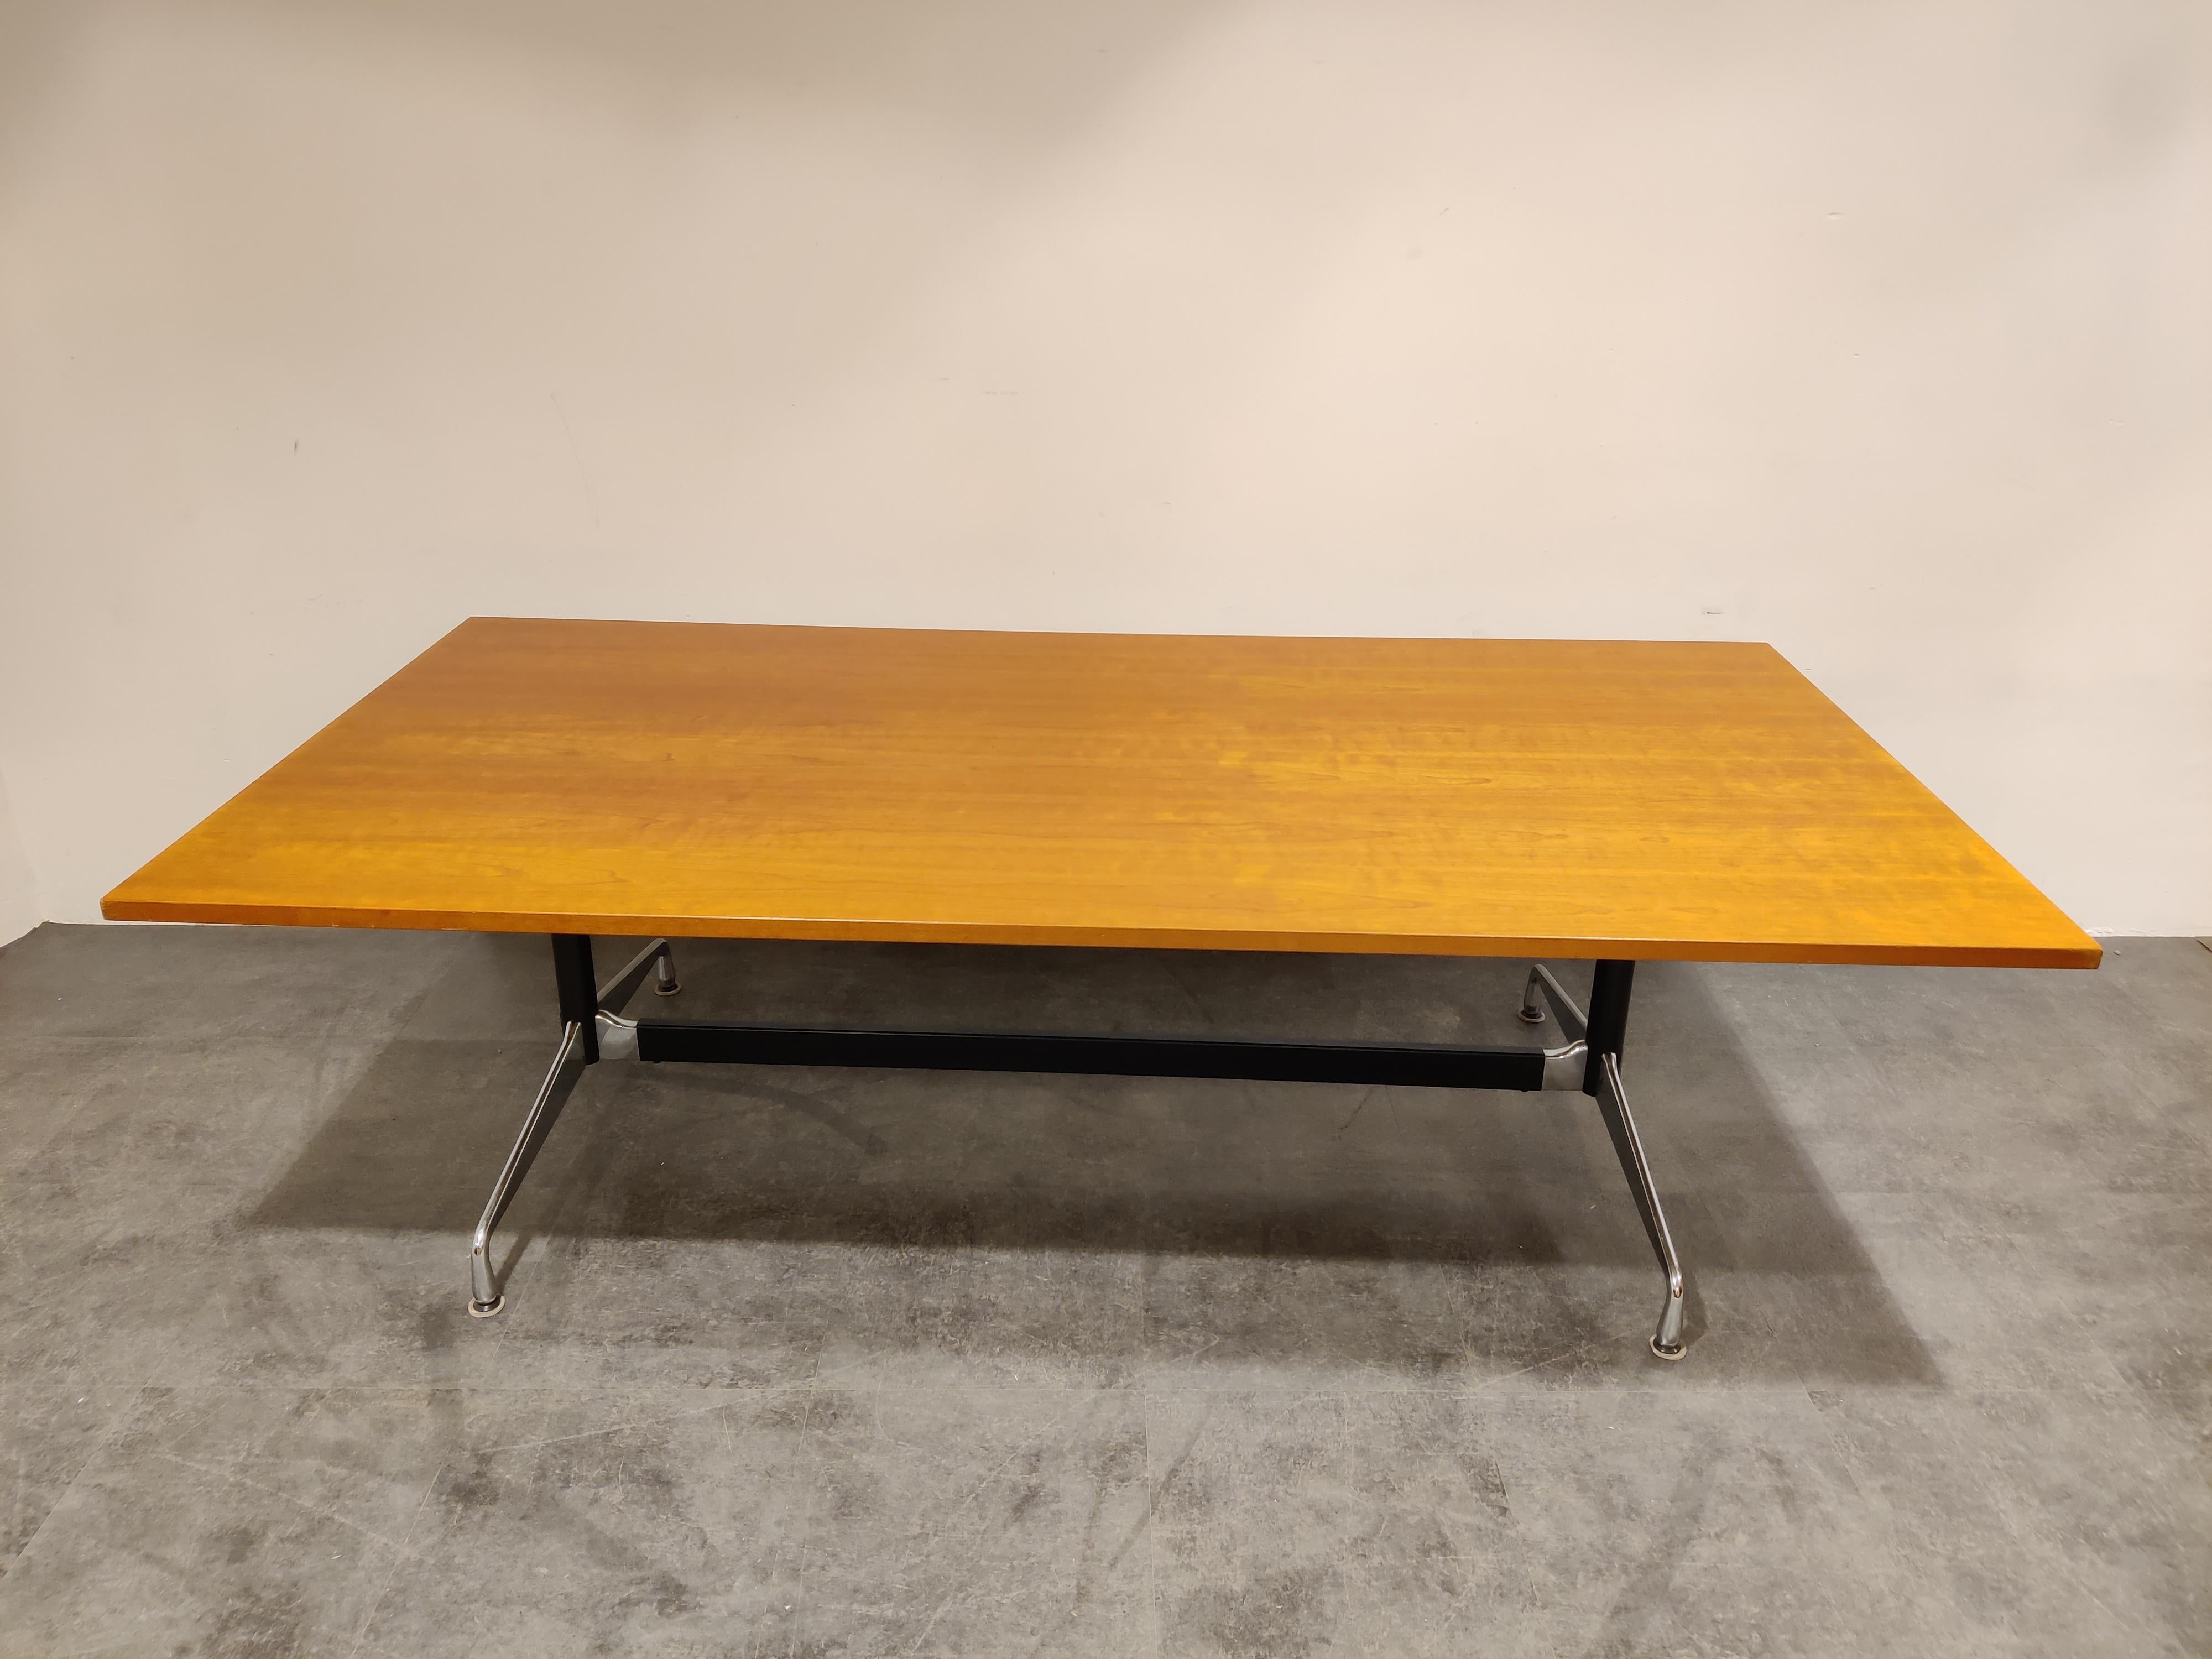 Großer Vintage-Esstisch, Konferenztisch von Charles und Ray Eames für Herman Miller.

Schöne und robuste Holzplatte mit einem verchromten Aluminiumfuß.

Der Tisch ist in gutem Originalzustand, kleine Beschädigungen an den Ecken.

Ein tolles